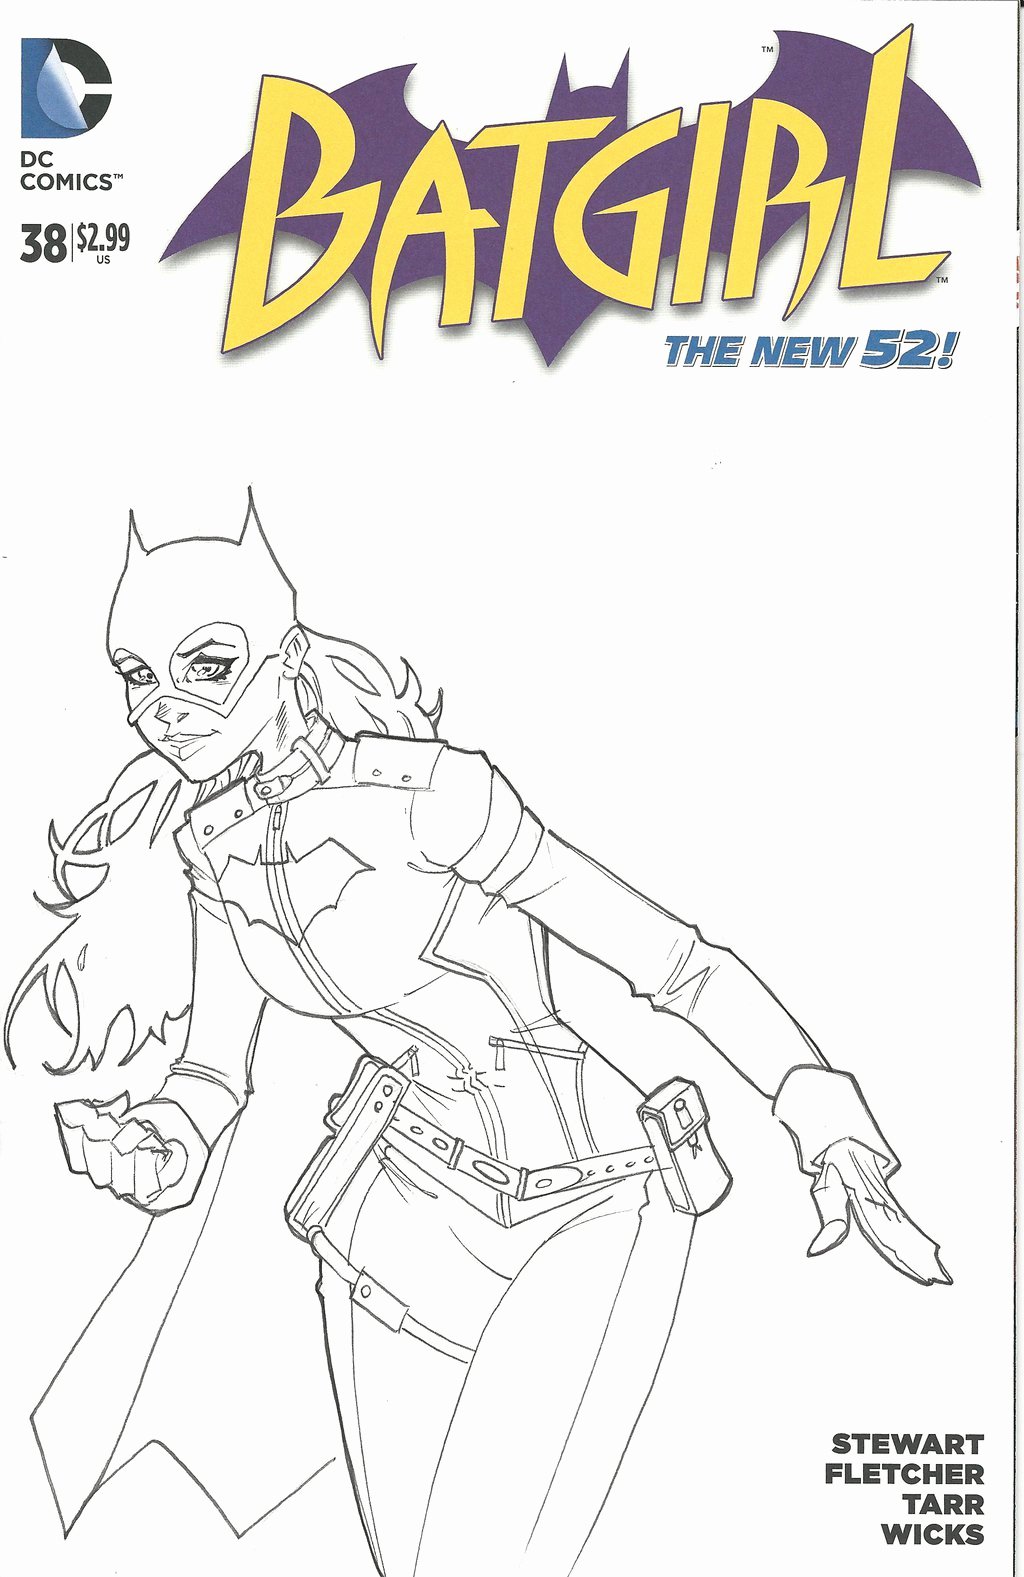 Batgirl Sketch Cover by Brianvander On Deviantart